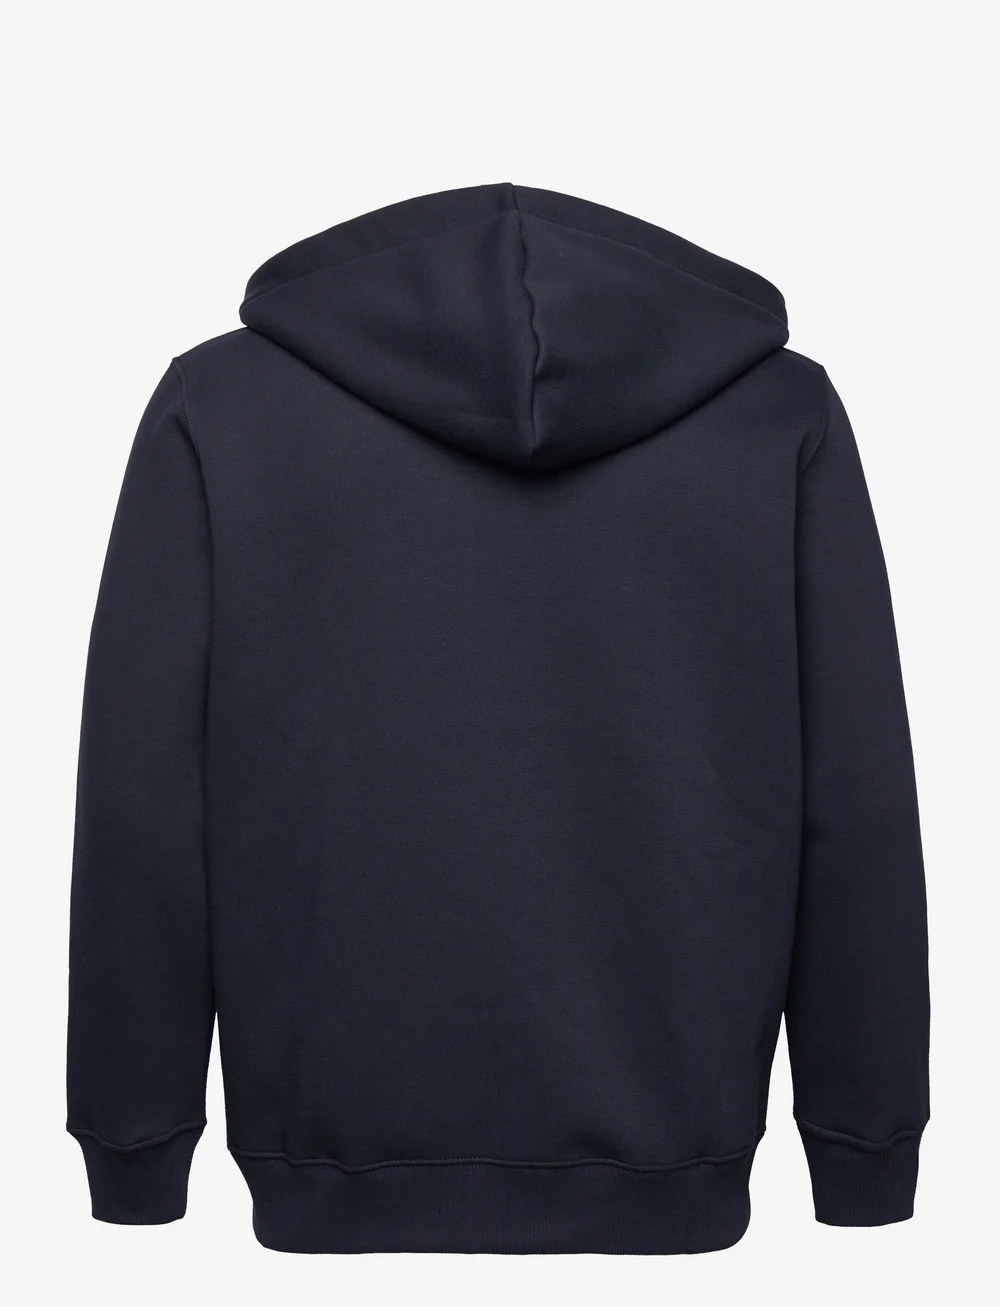 Alpha Industries Basic Zip Hoody – sweatshirts & hoodies – shop at Booztlet